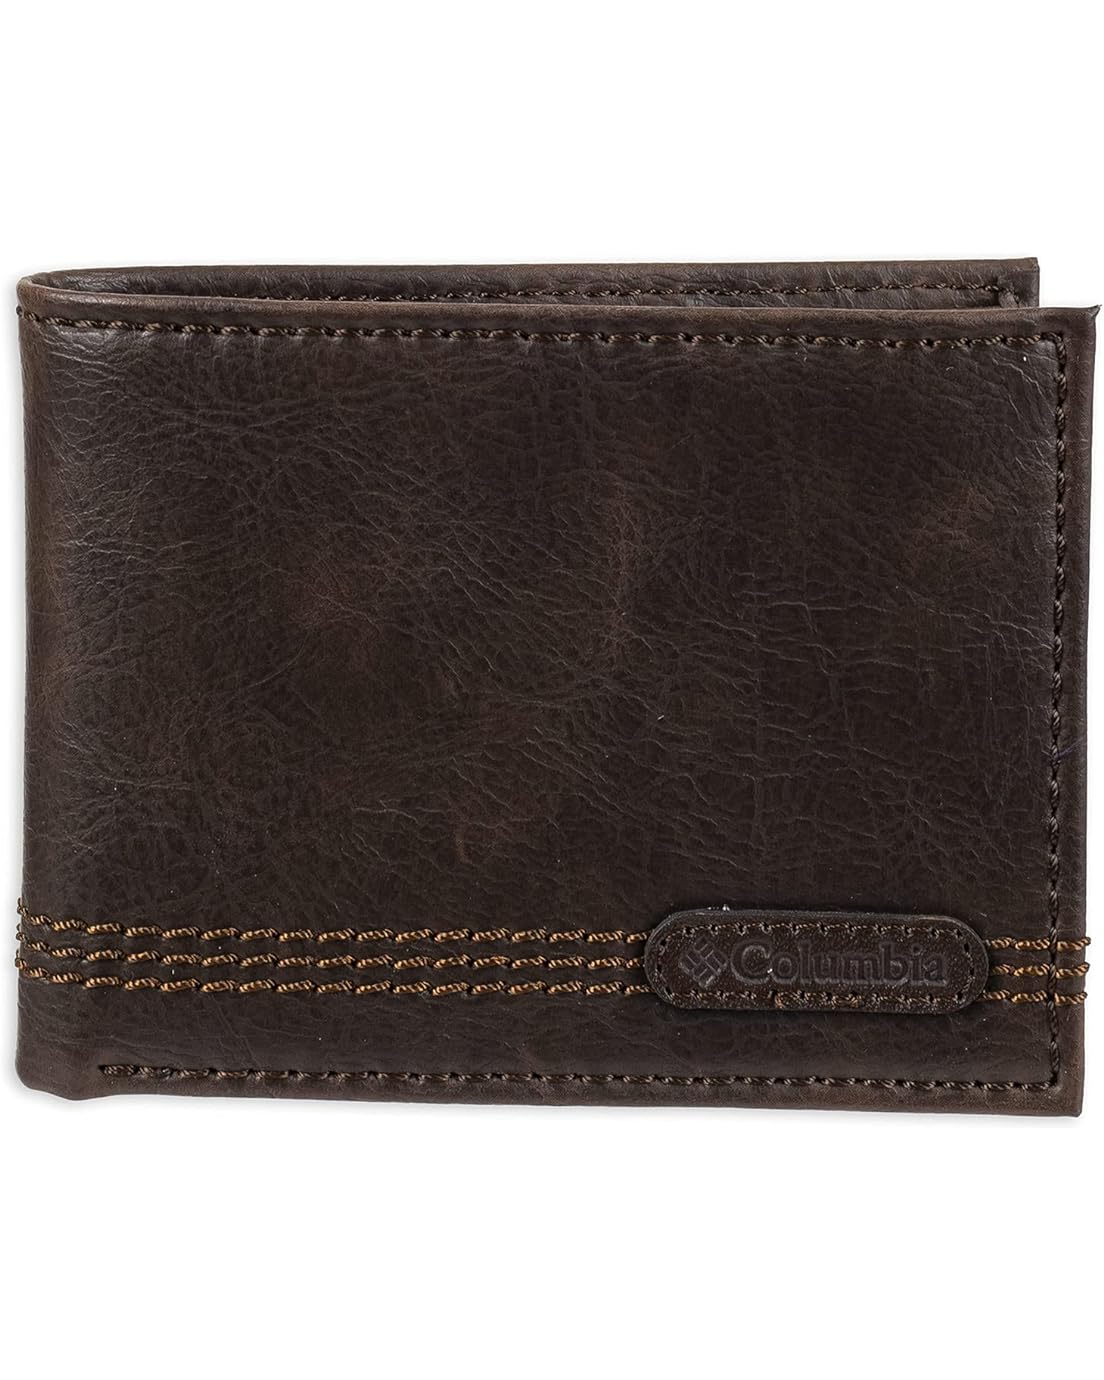 콜롬비아 Columbia Mens Leather Extra Capacity Slimfold Wallet